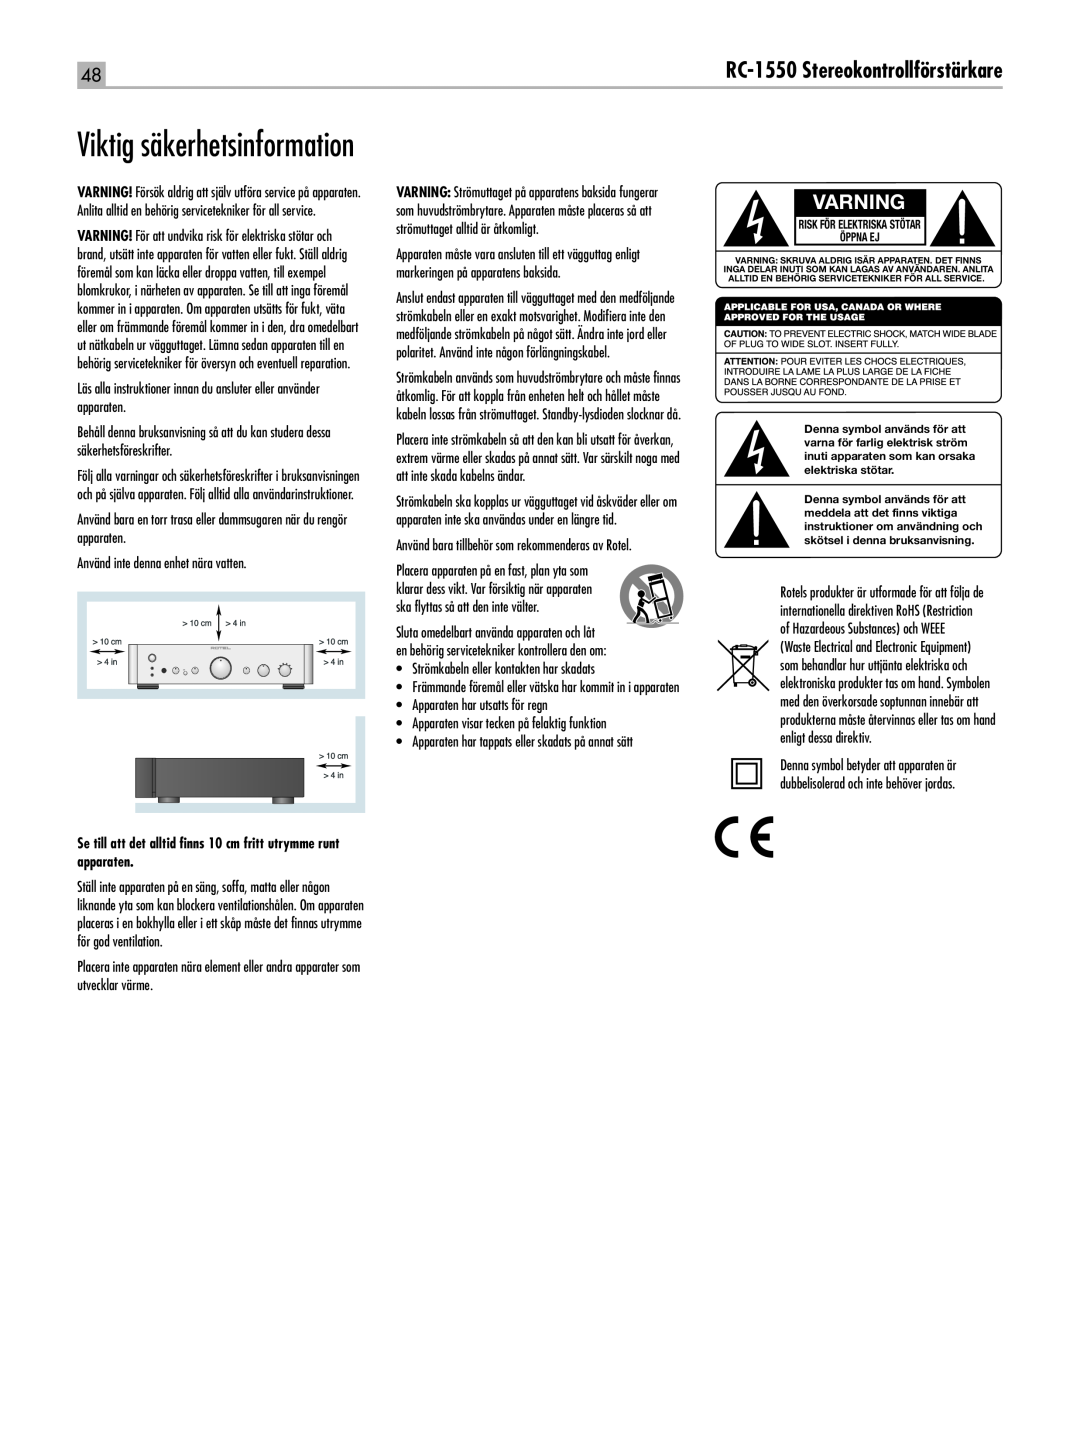 Rotel Viktig säkerhetsinformation, Varning, RC-1550Stereokontrollförstärkare, Risk För Elektriska Stötar Öppna Ej 